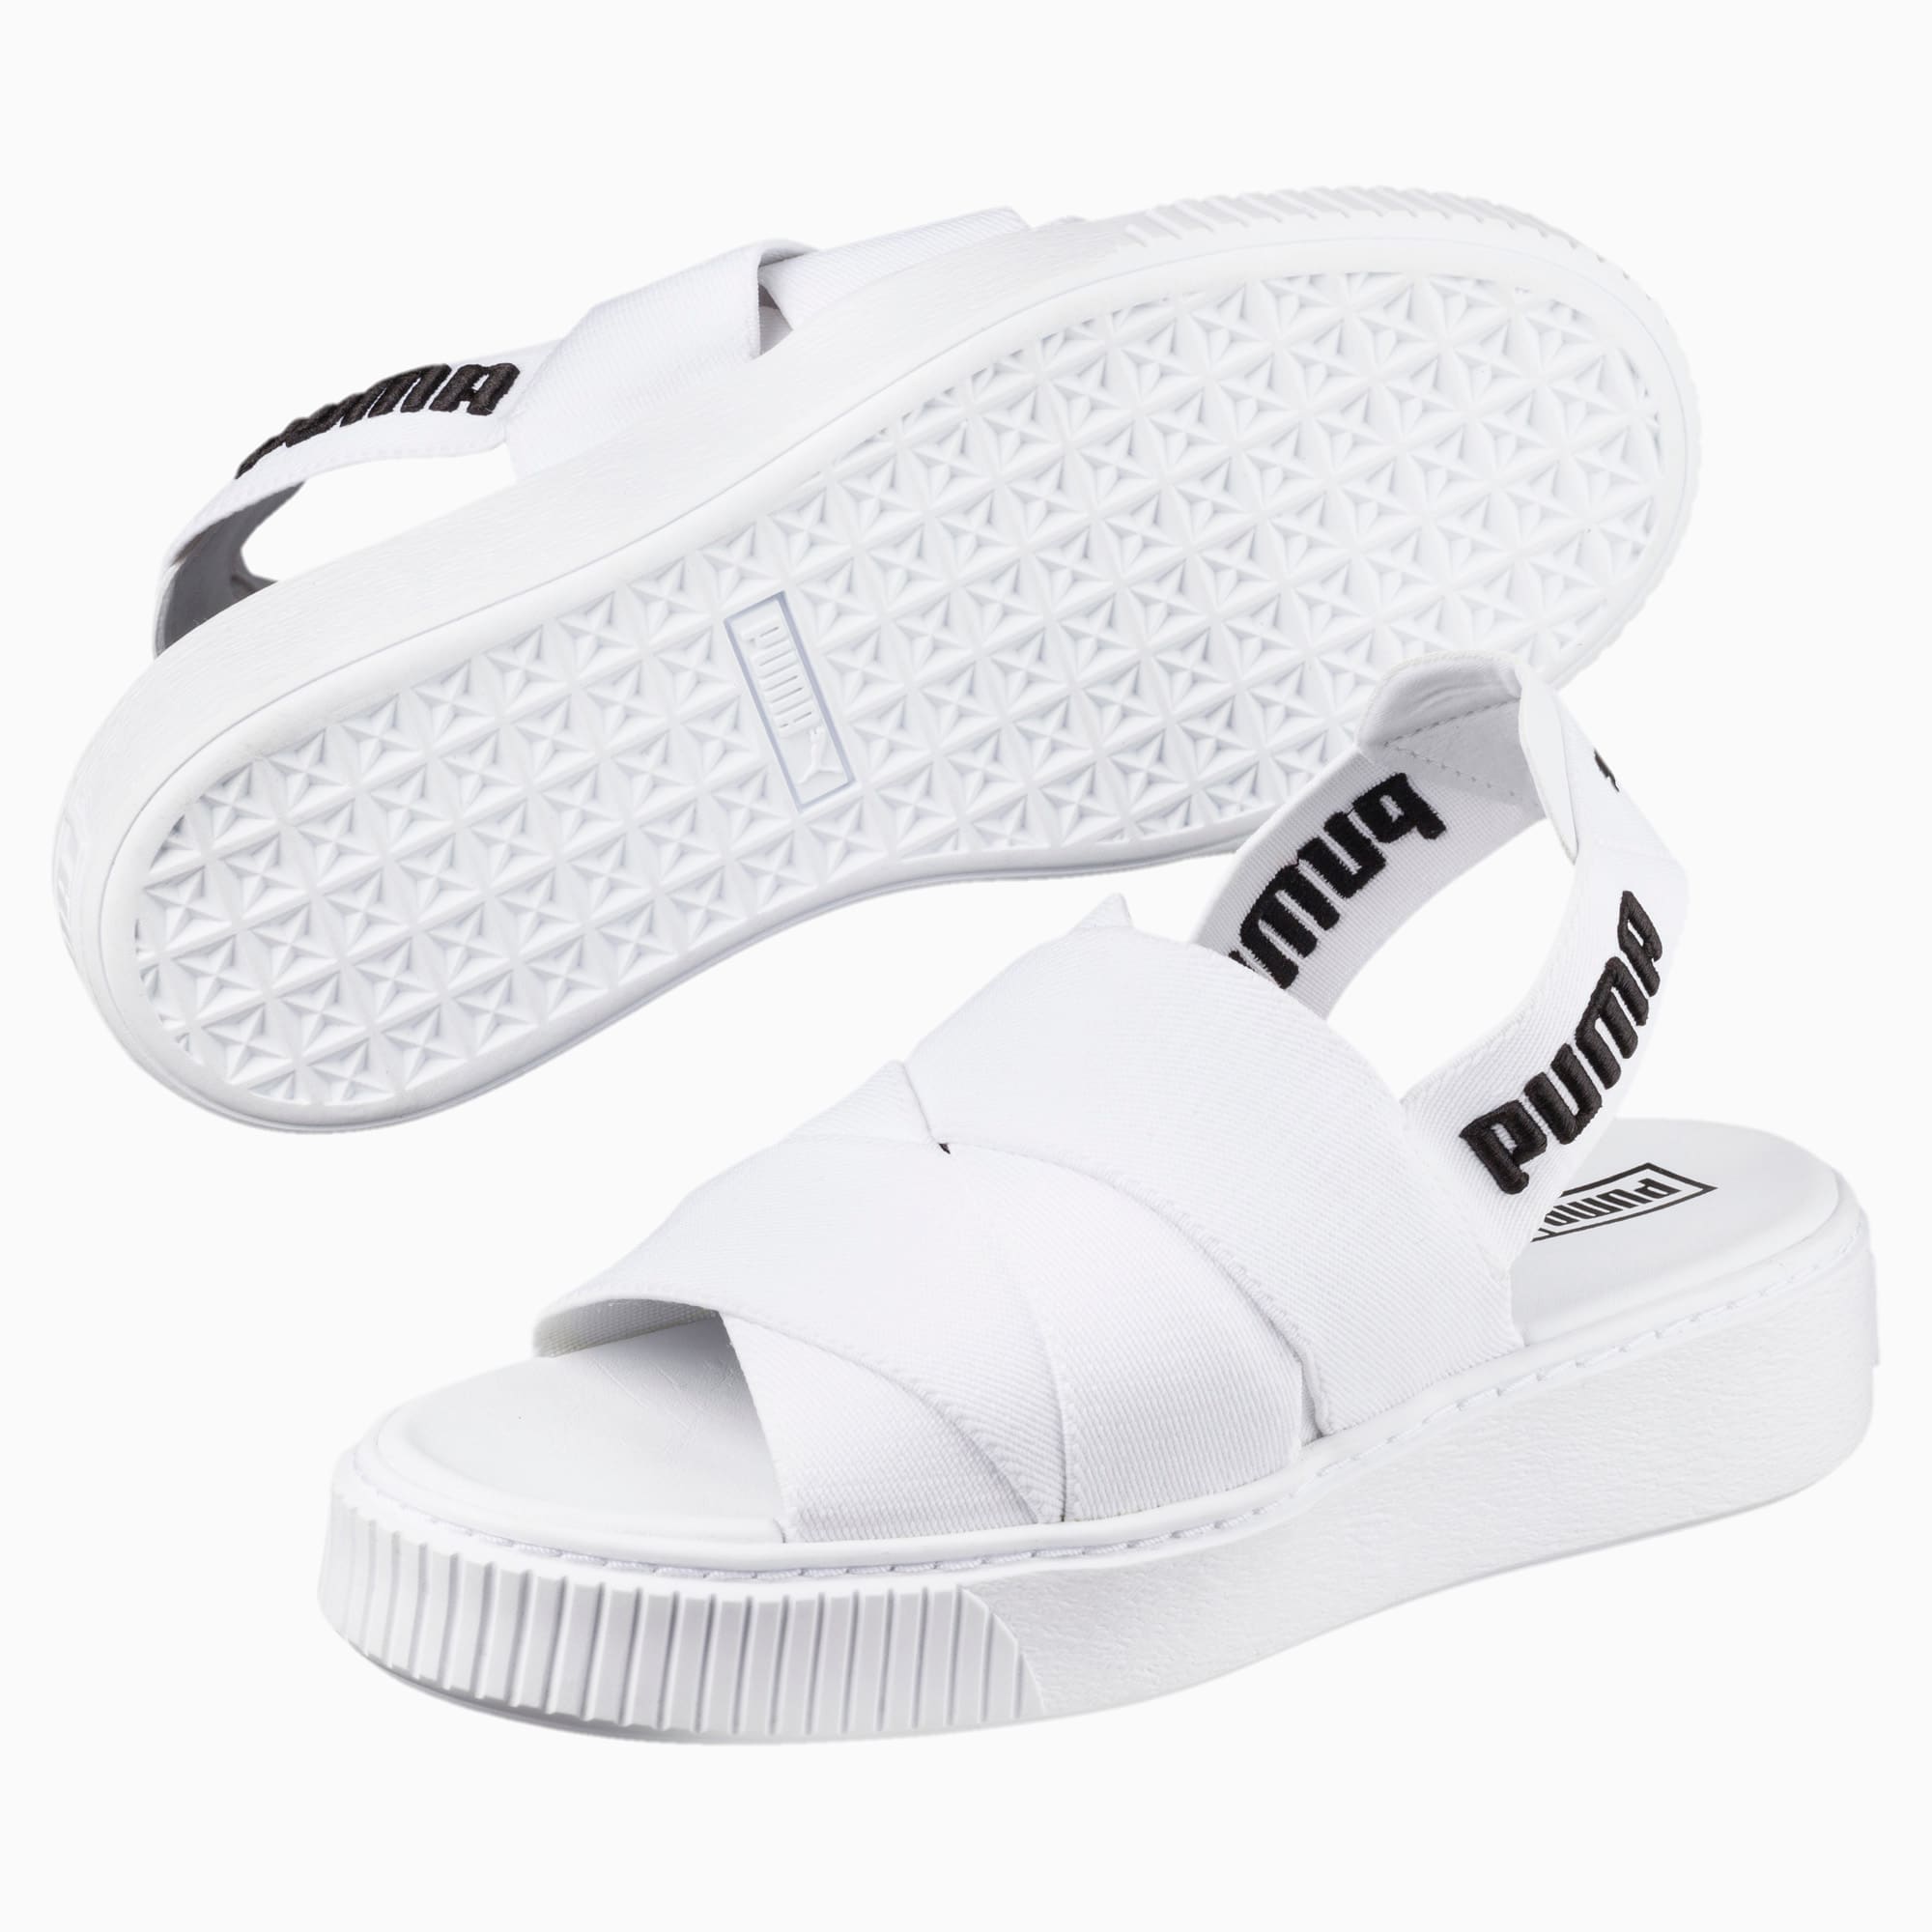 puma sandals for ladies